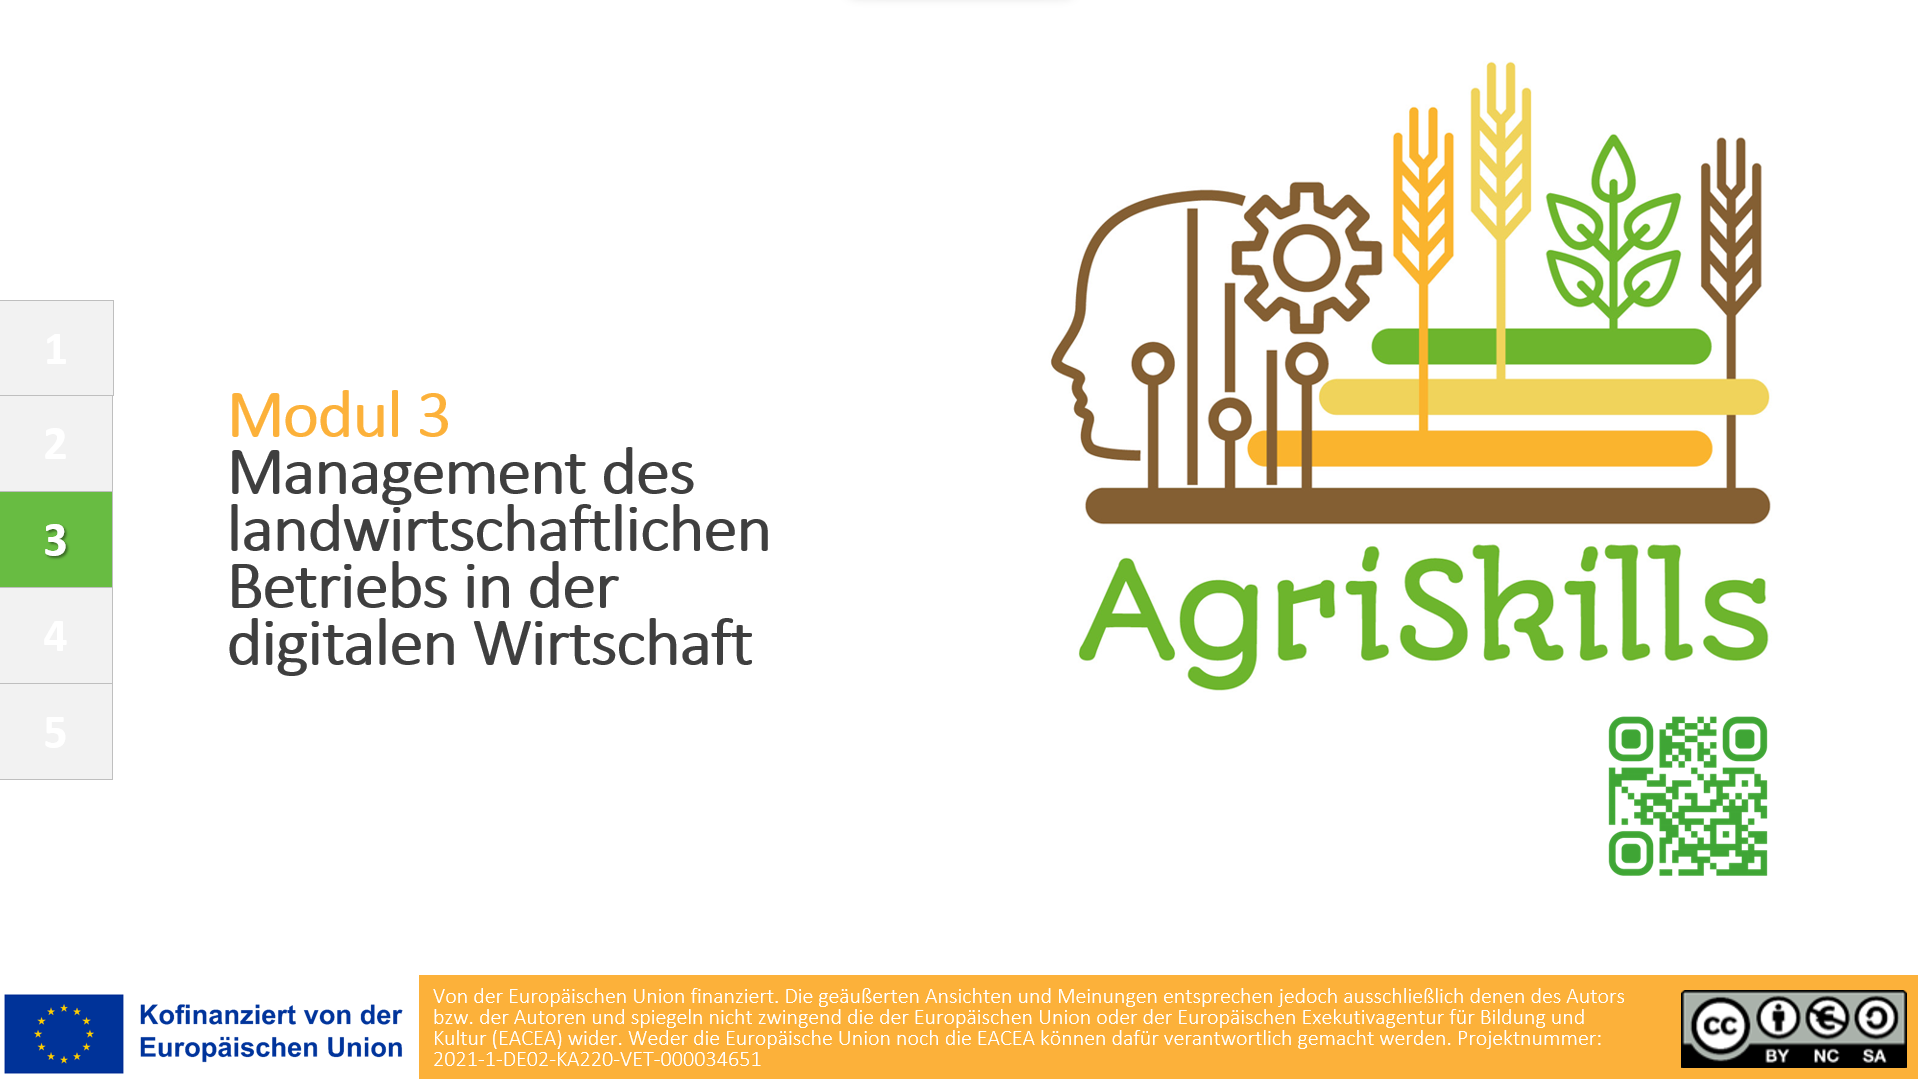 Management des landwirtschaftlichen Betriebs in der digitalen Wirtschaft